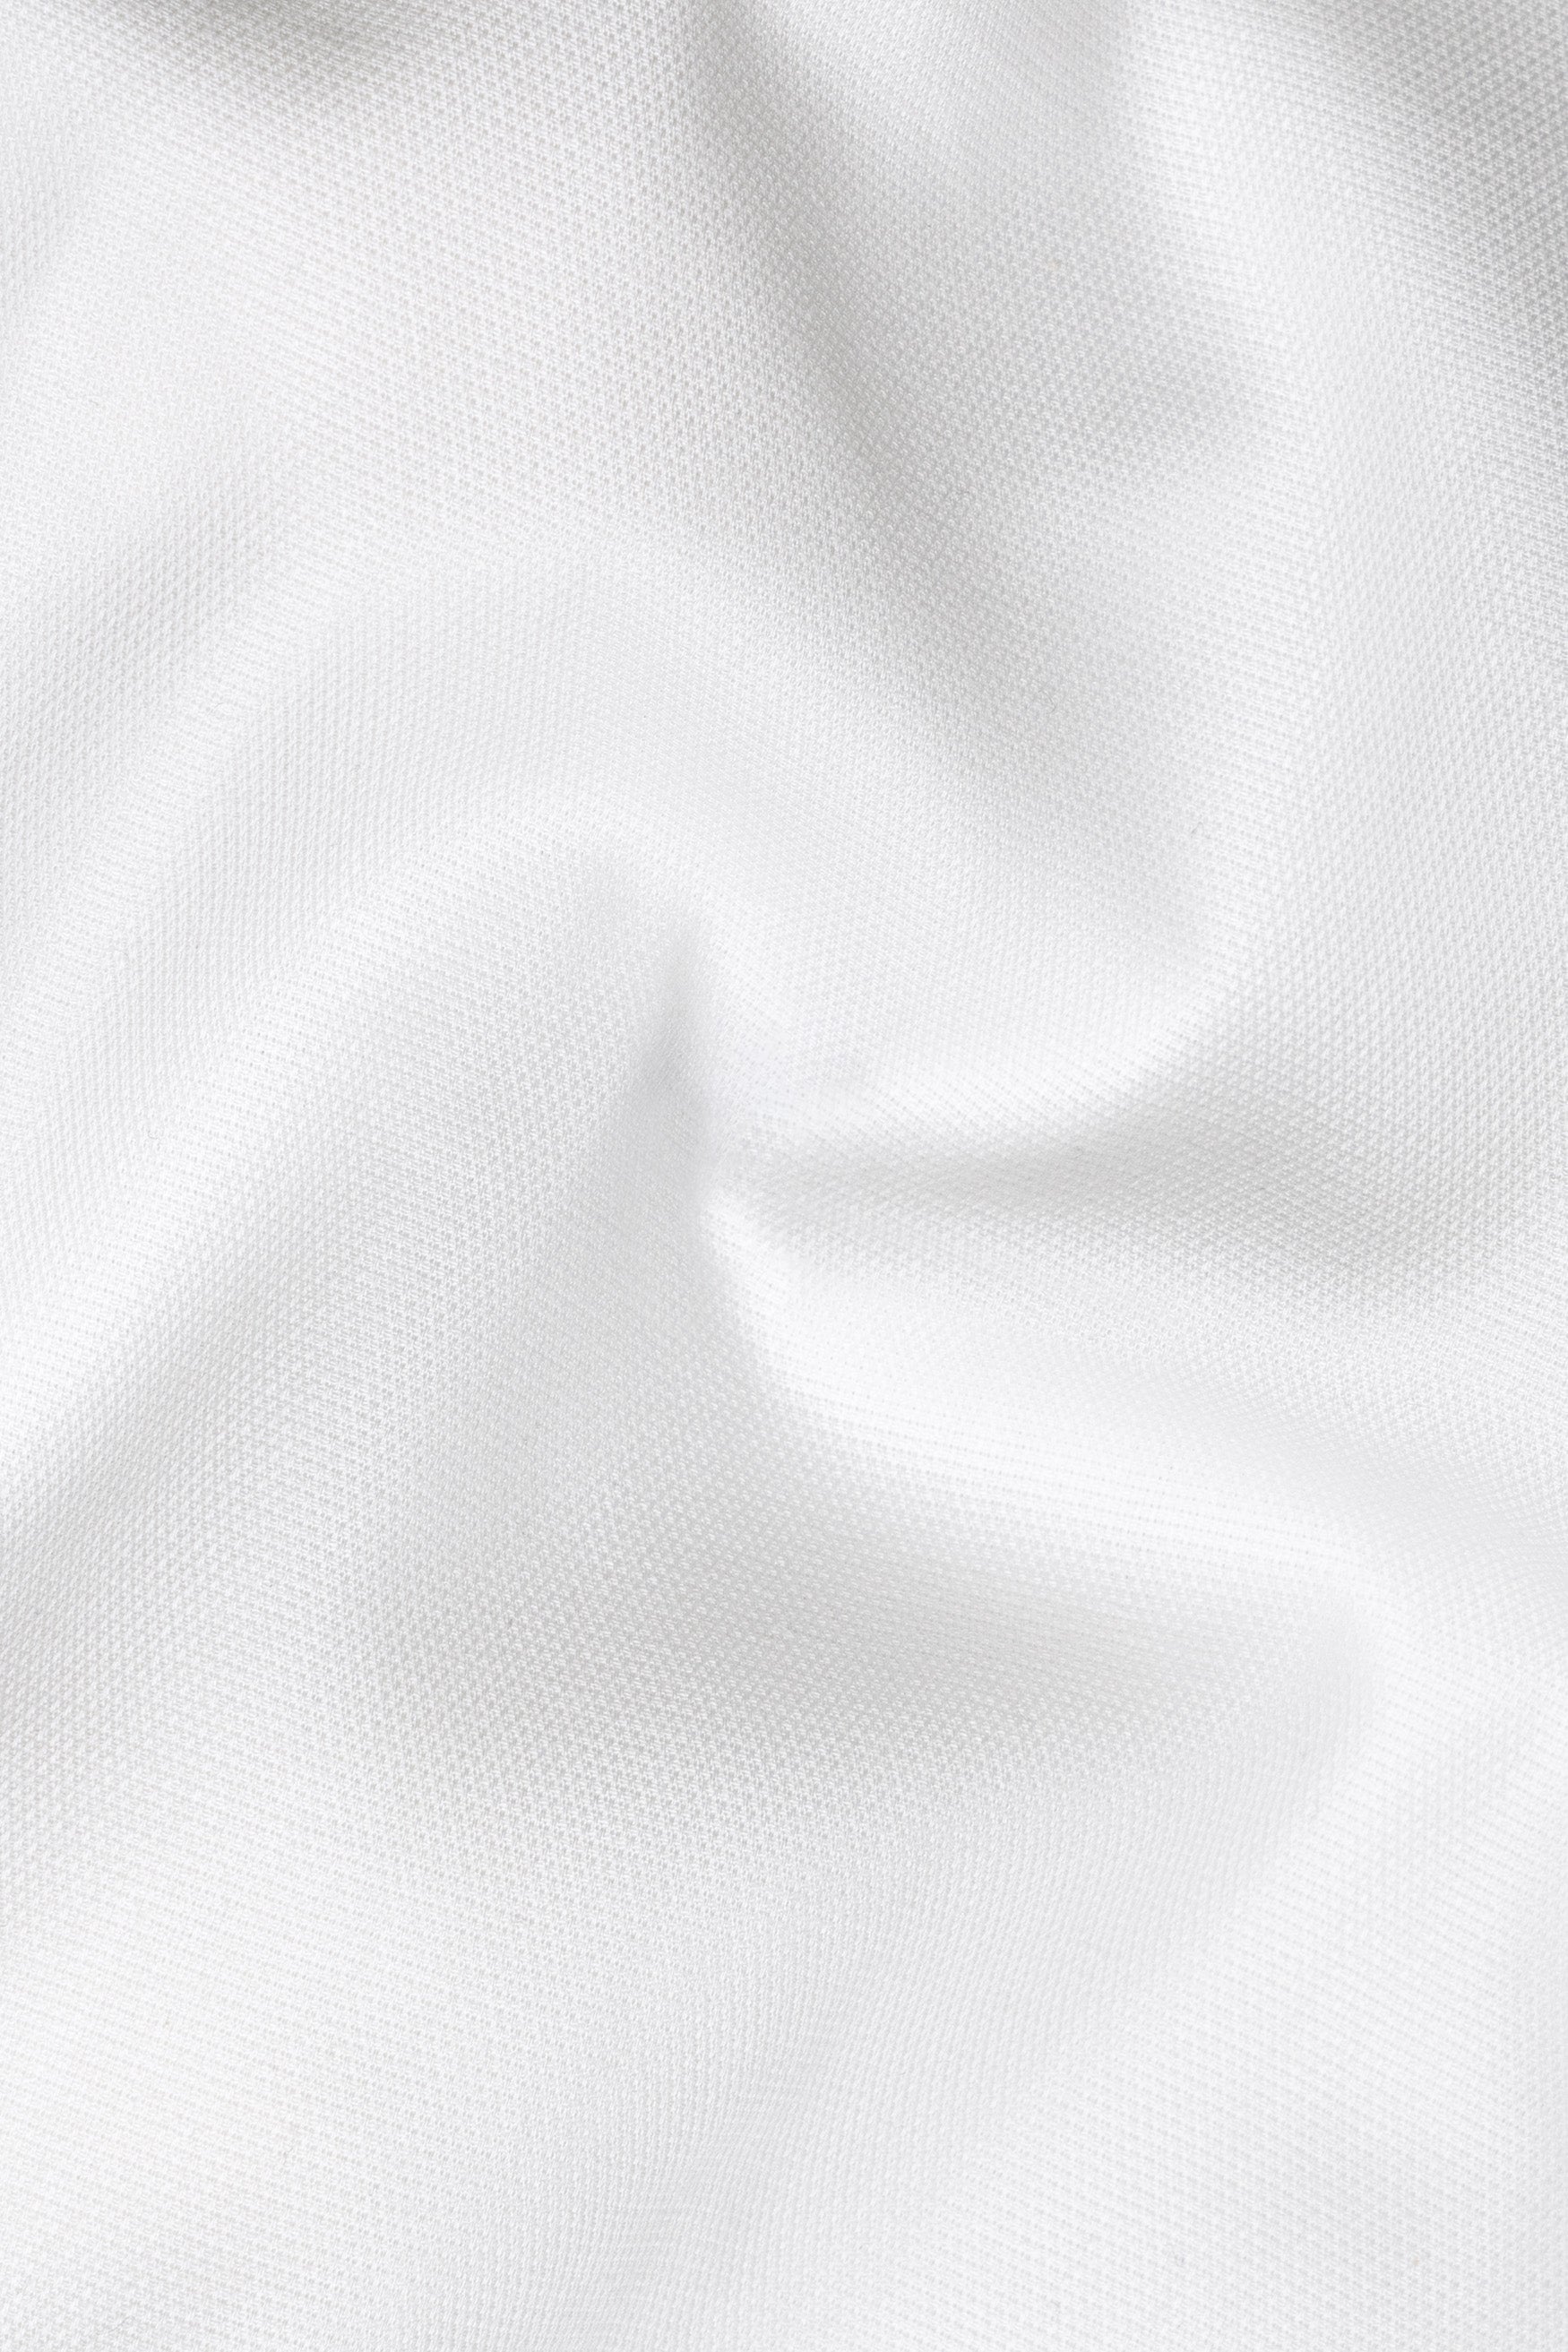 Bright White Dobby Premium Giza Cotton Shirt